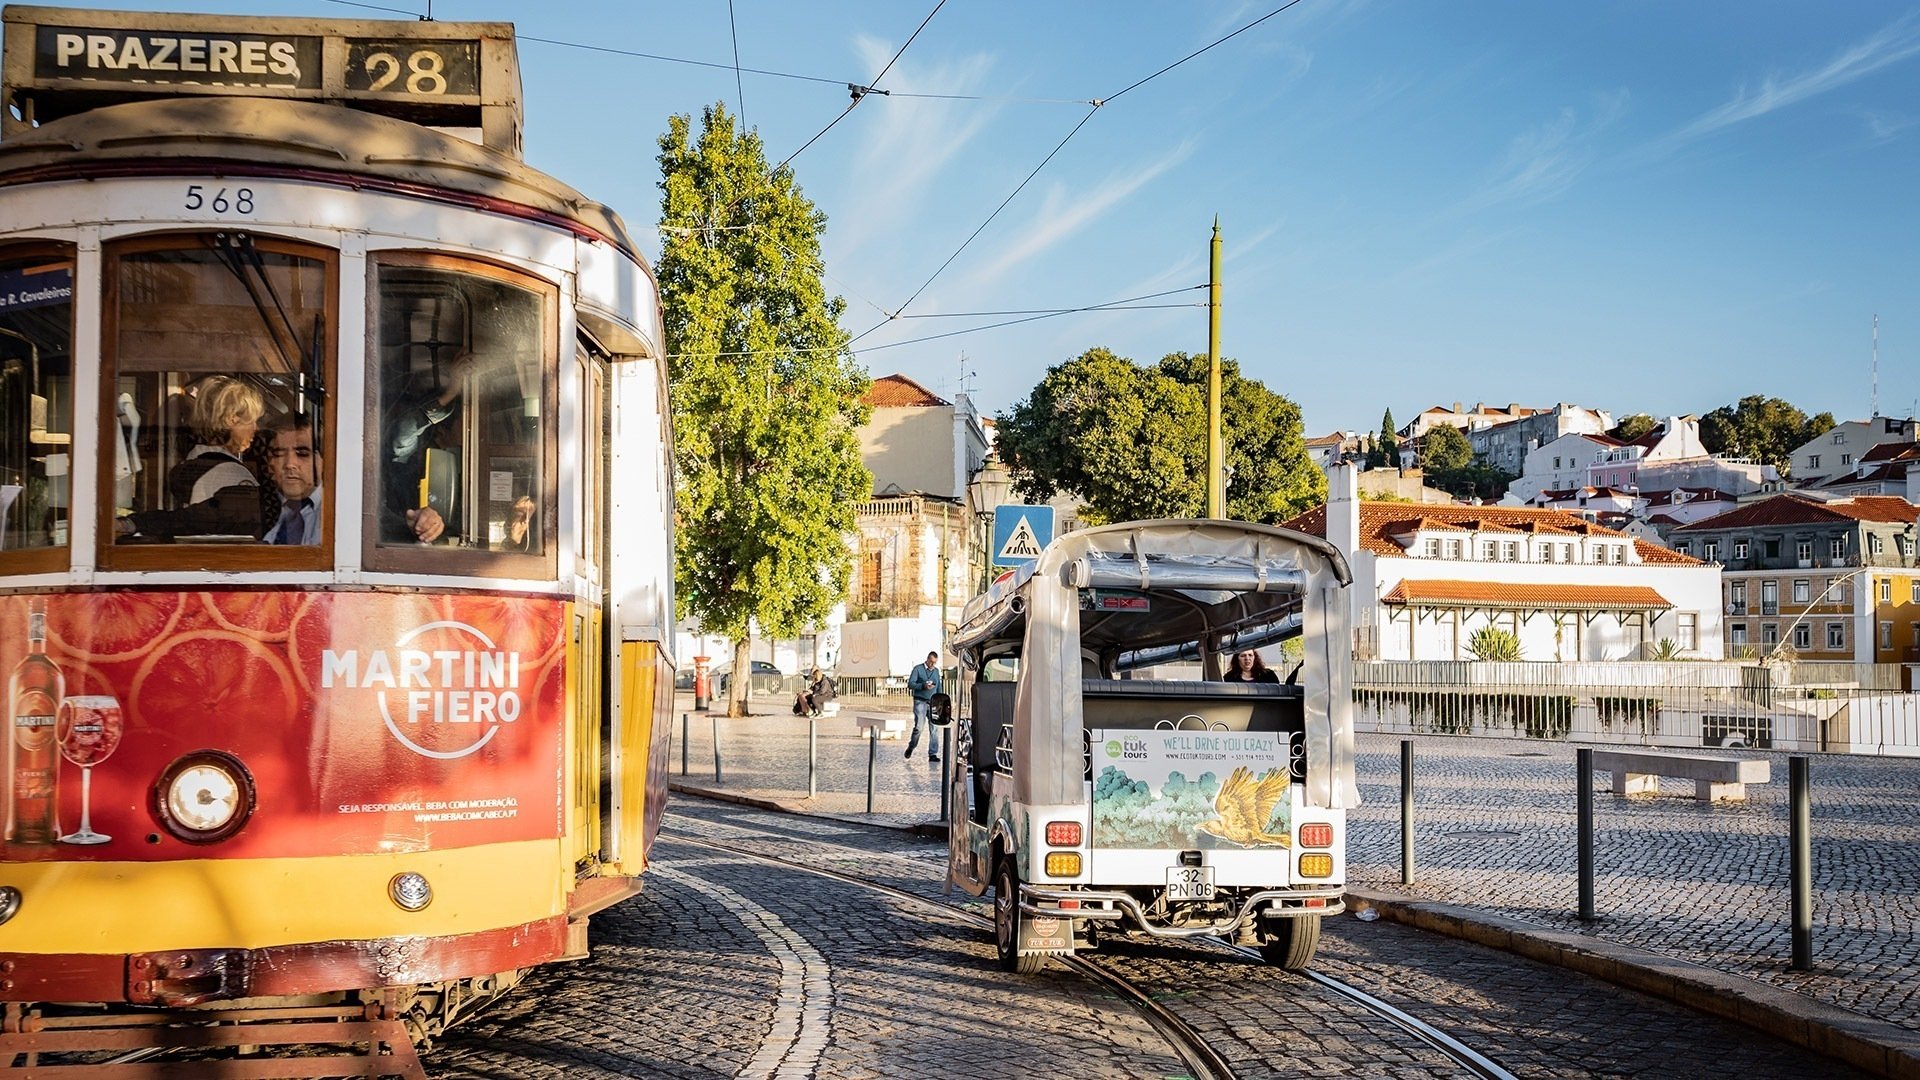 Tour und Verkostung von kulinarischen Erlebnissen an anerkannten Orten in Lissabon